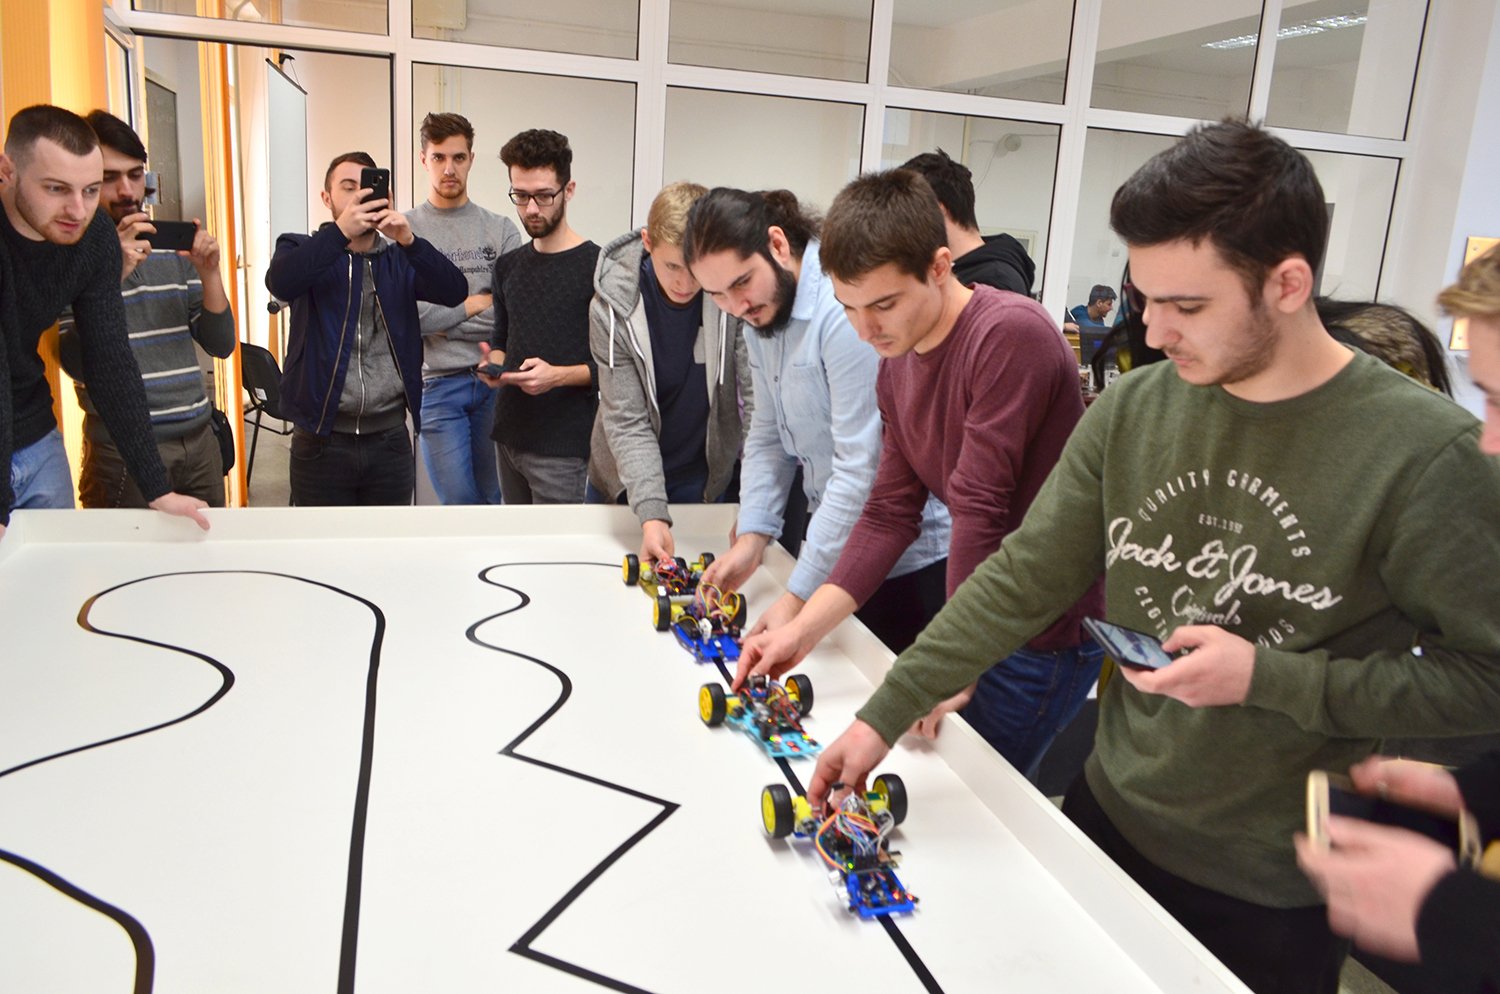  Studenţii de la Robotică au dau un examen inedit: cât de abili le sunt roboţii făcuţi de ei